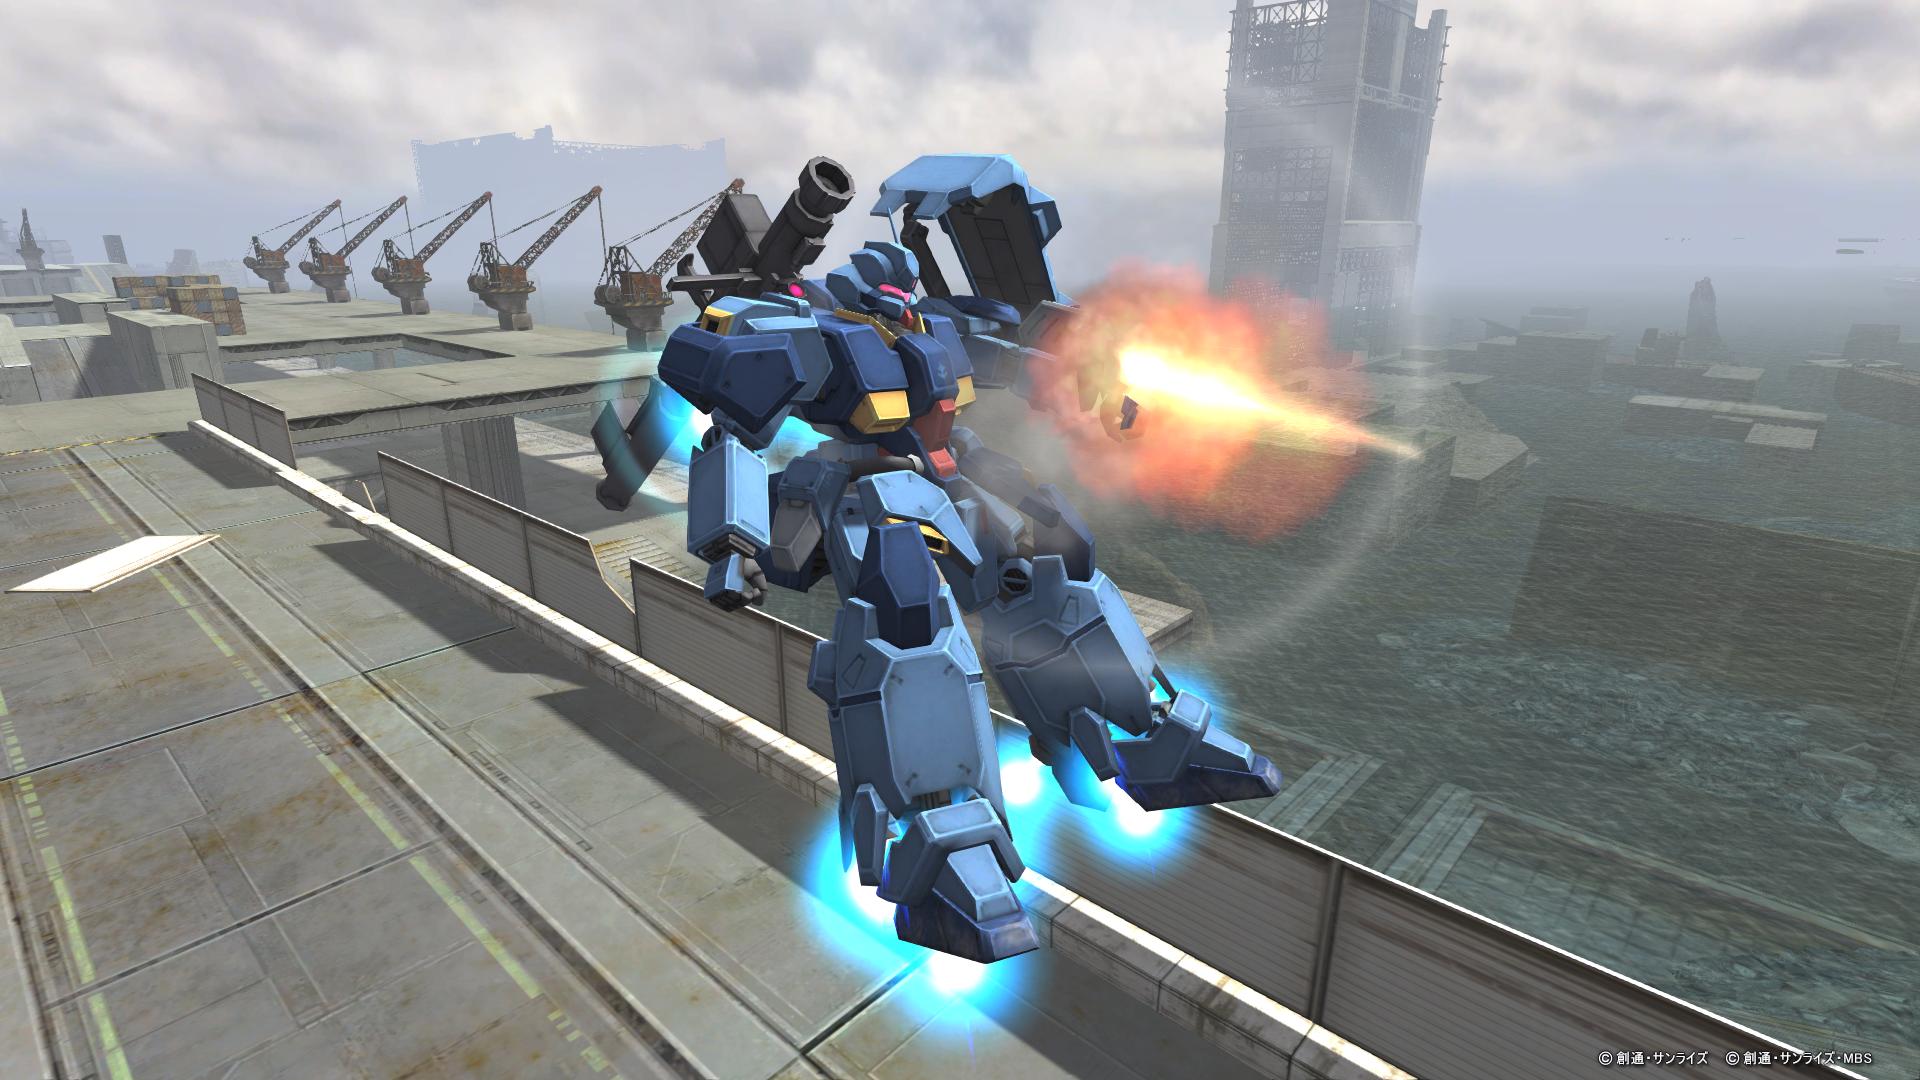 新機体 ペーネロペー 3ガンダム が登場 機動戦士ガンダム 閃光のハサウェイ 連動キャンペーンを開催 機動戦士ガンダムオンライン Gundam Perfect Games Gpg